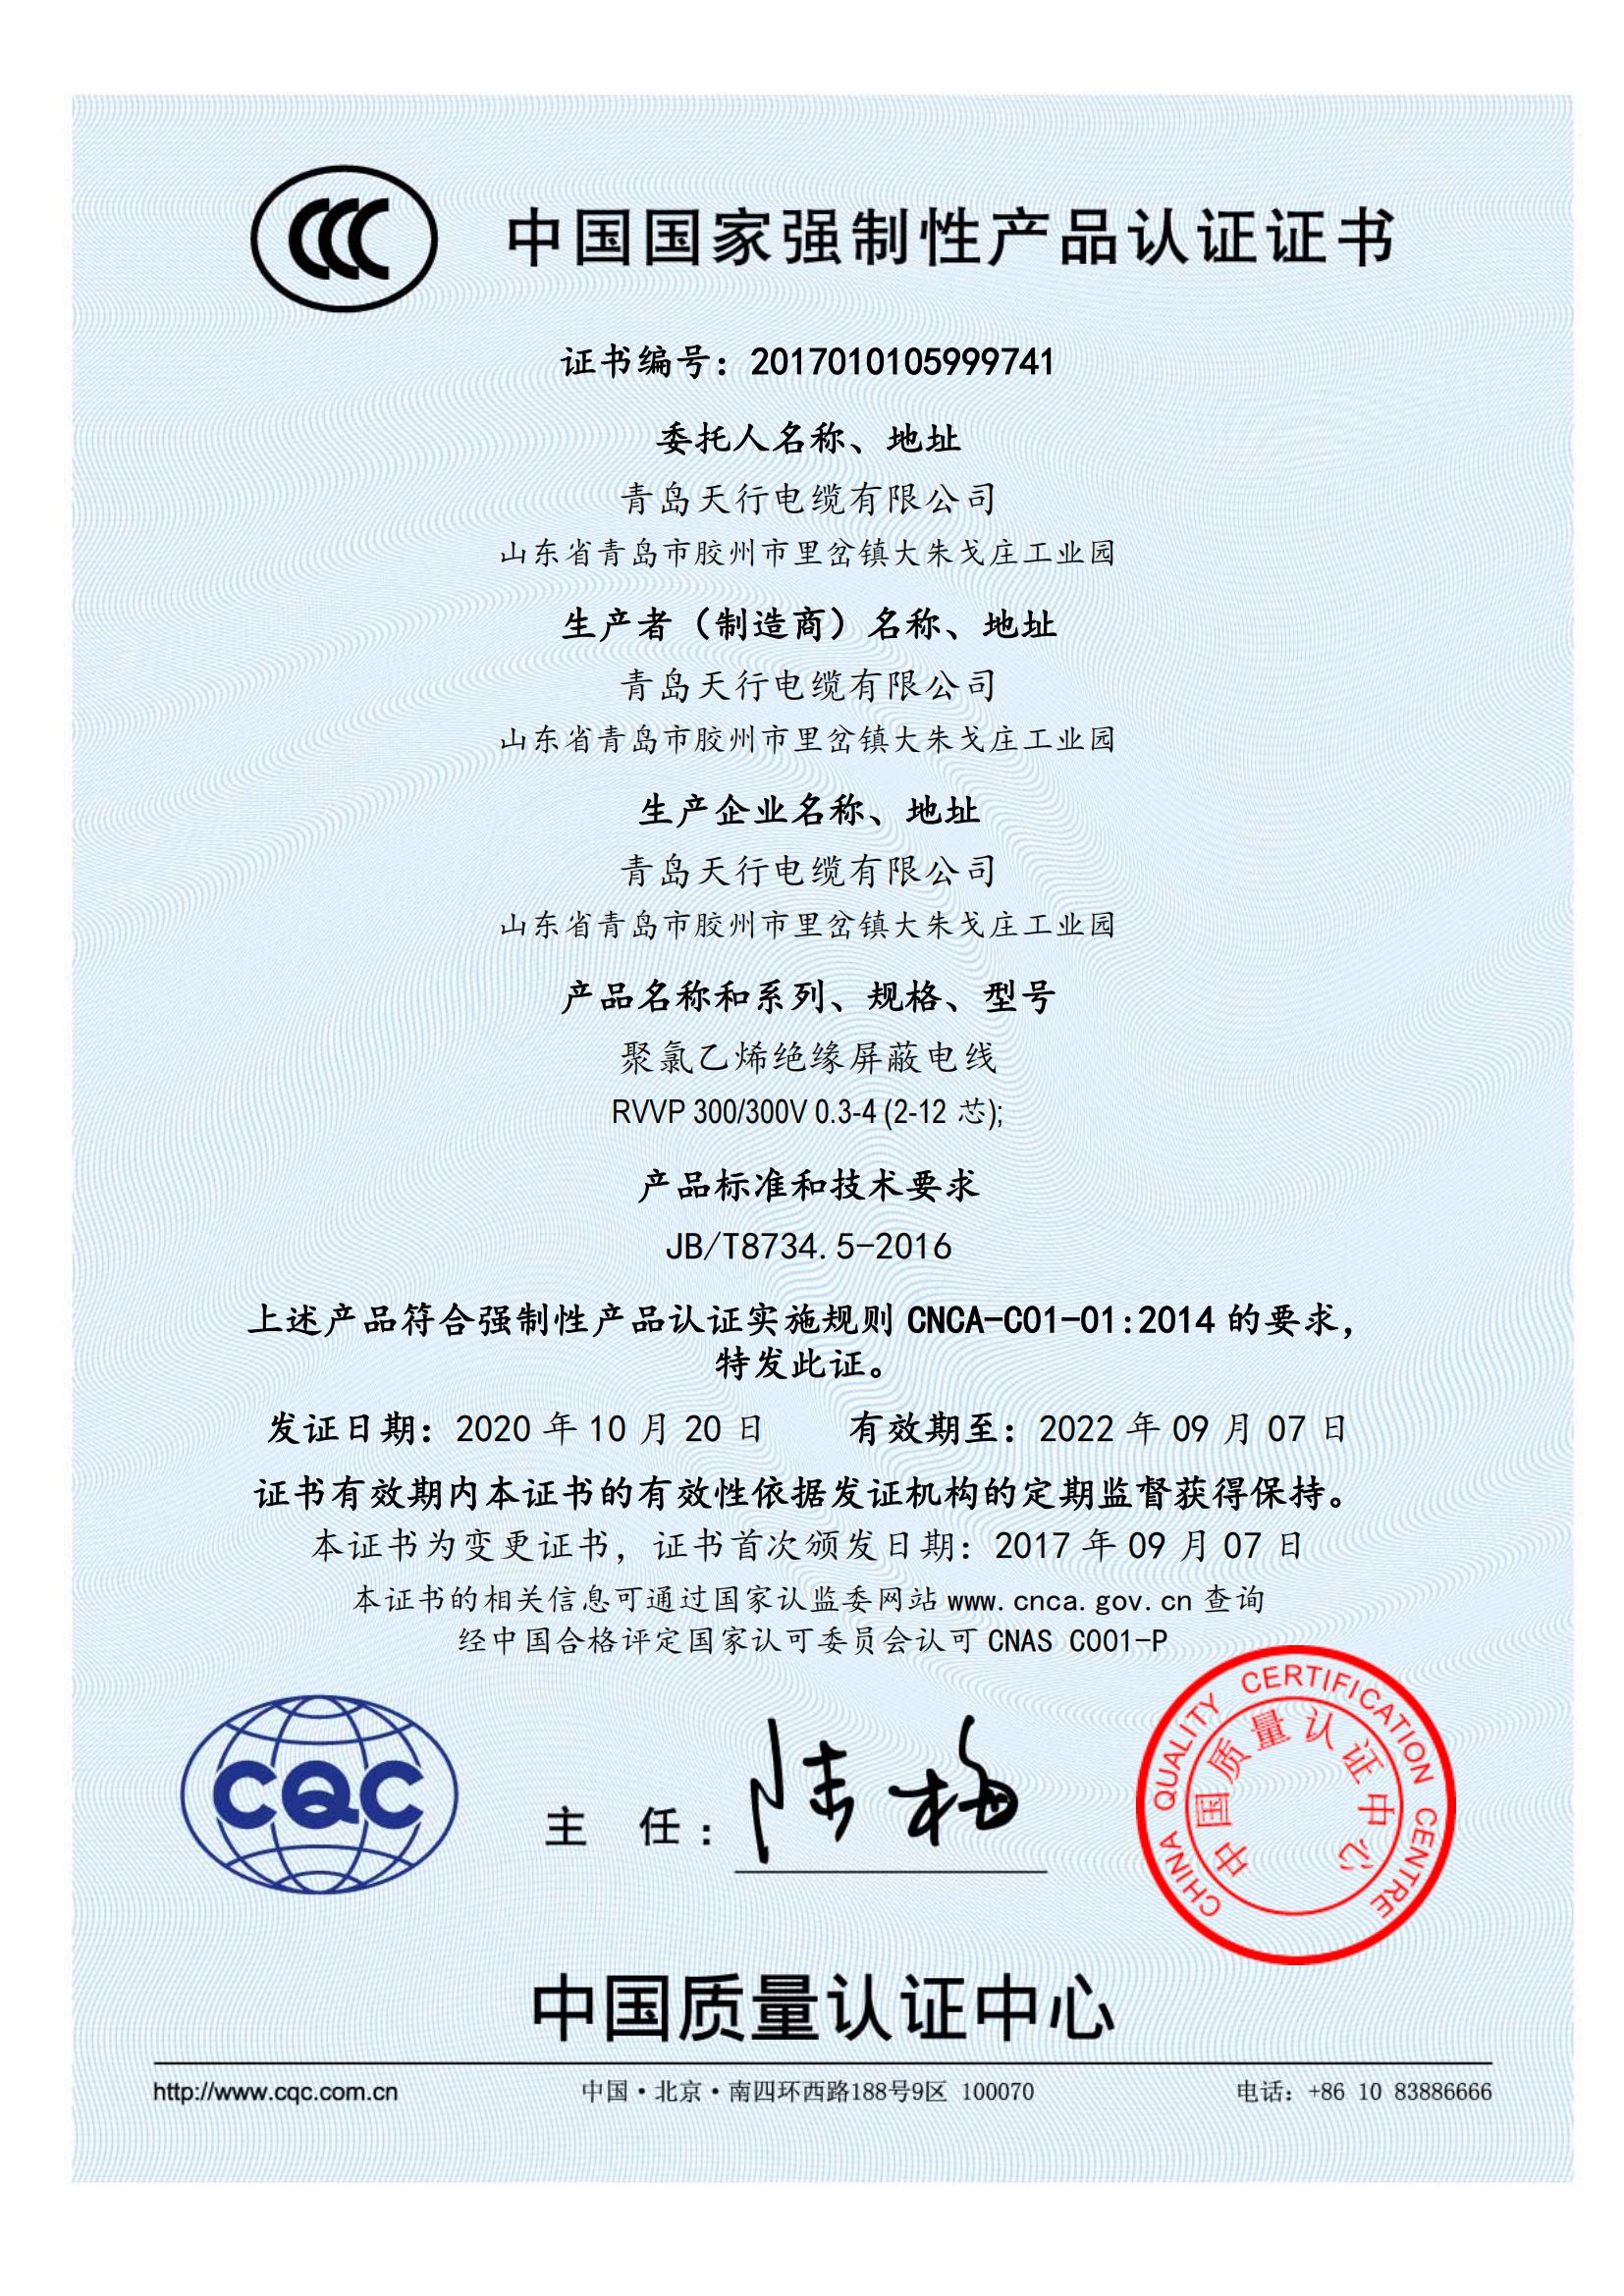 CCC RVVP 证书